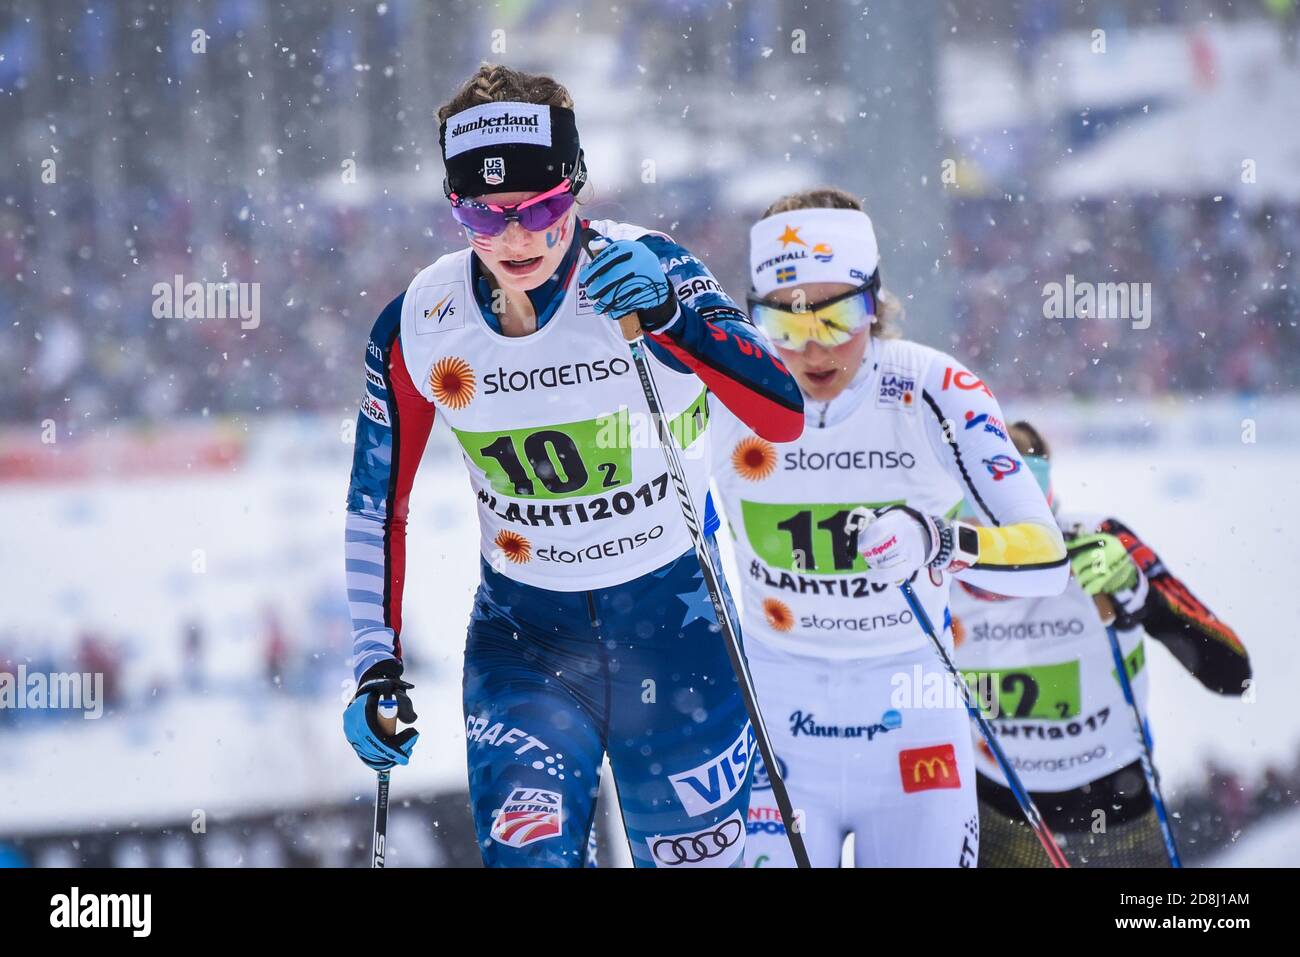 Jessie Diggins (USA), team sprint, Lahti 2017, seguito da Stina Nilsson (SWE); Diggins batte Nilsson al traguardo per prendere il terzo. Foto Stock